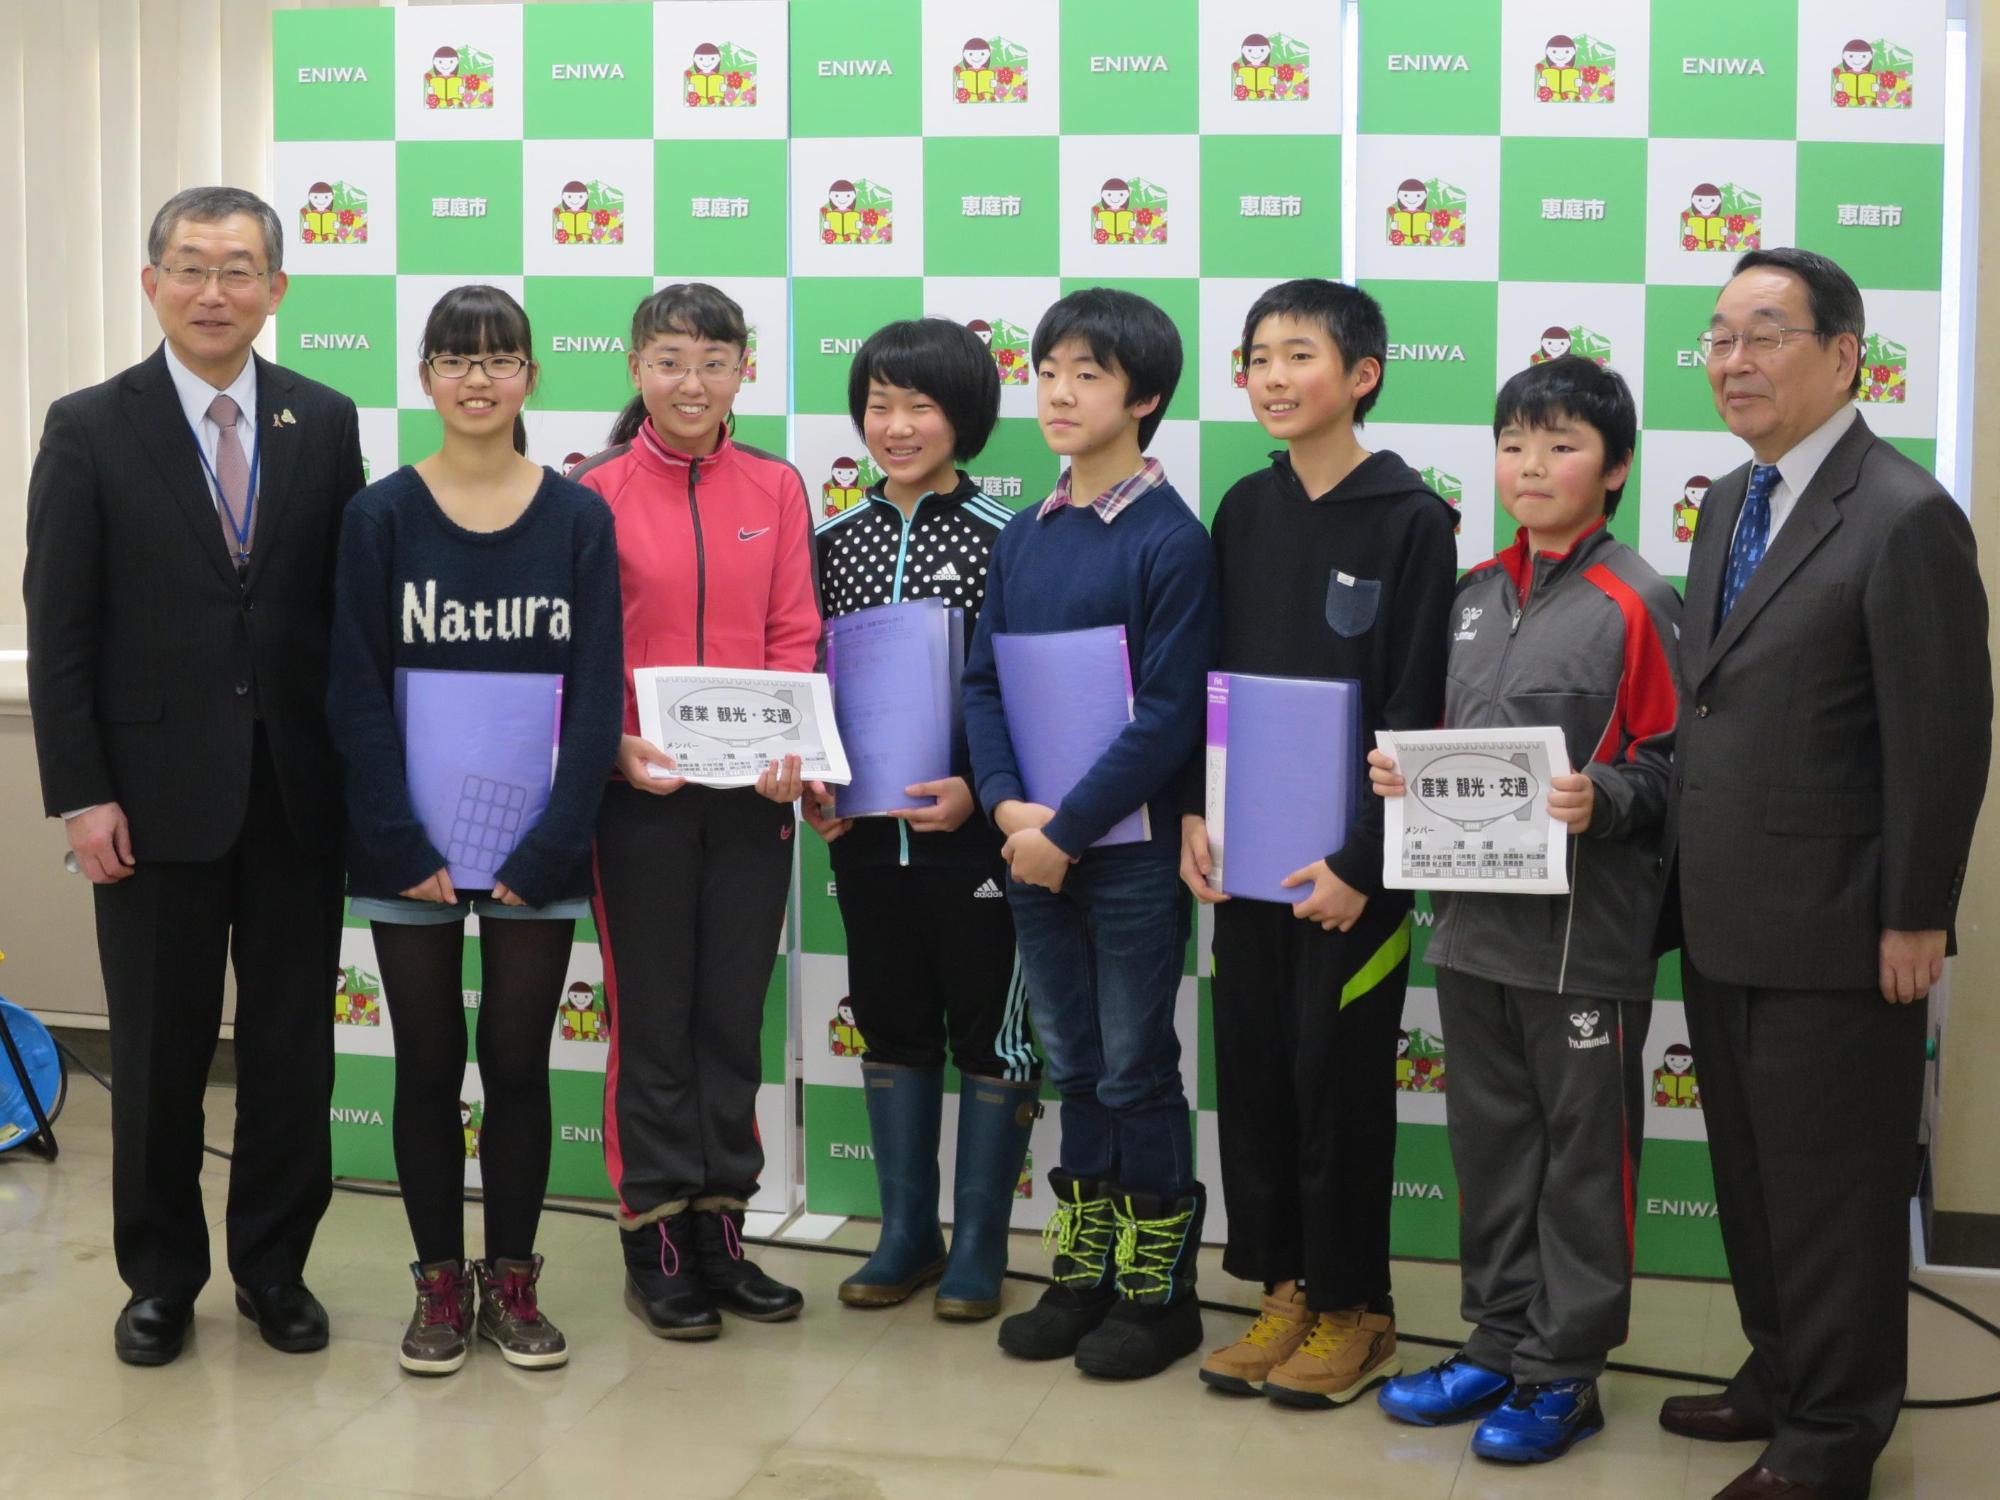 若草小学校6年生の代表6人と原田市長が記念撮影している写真